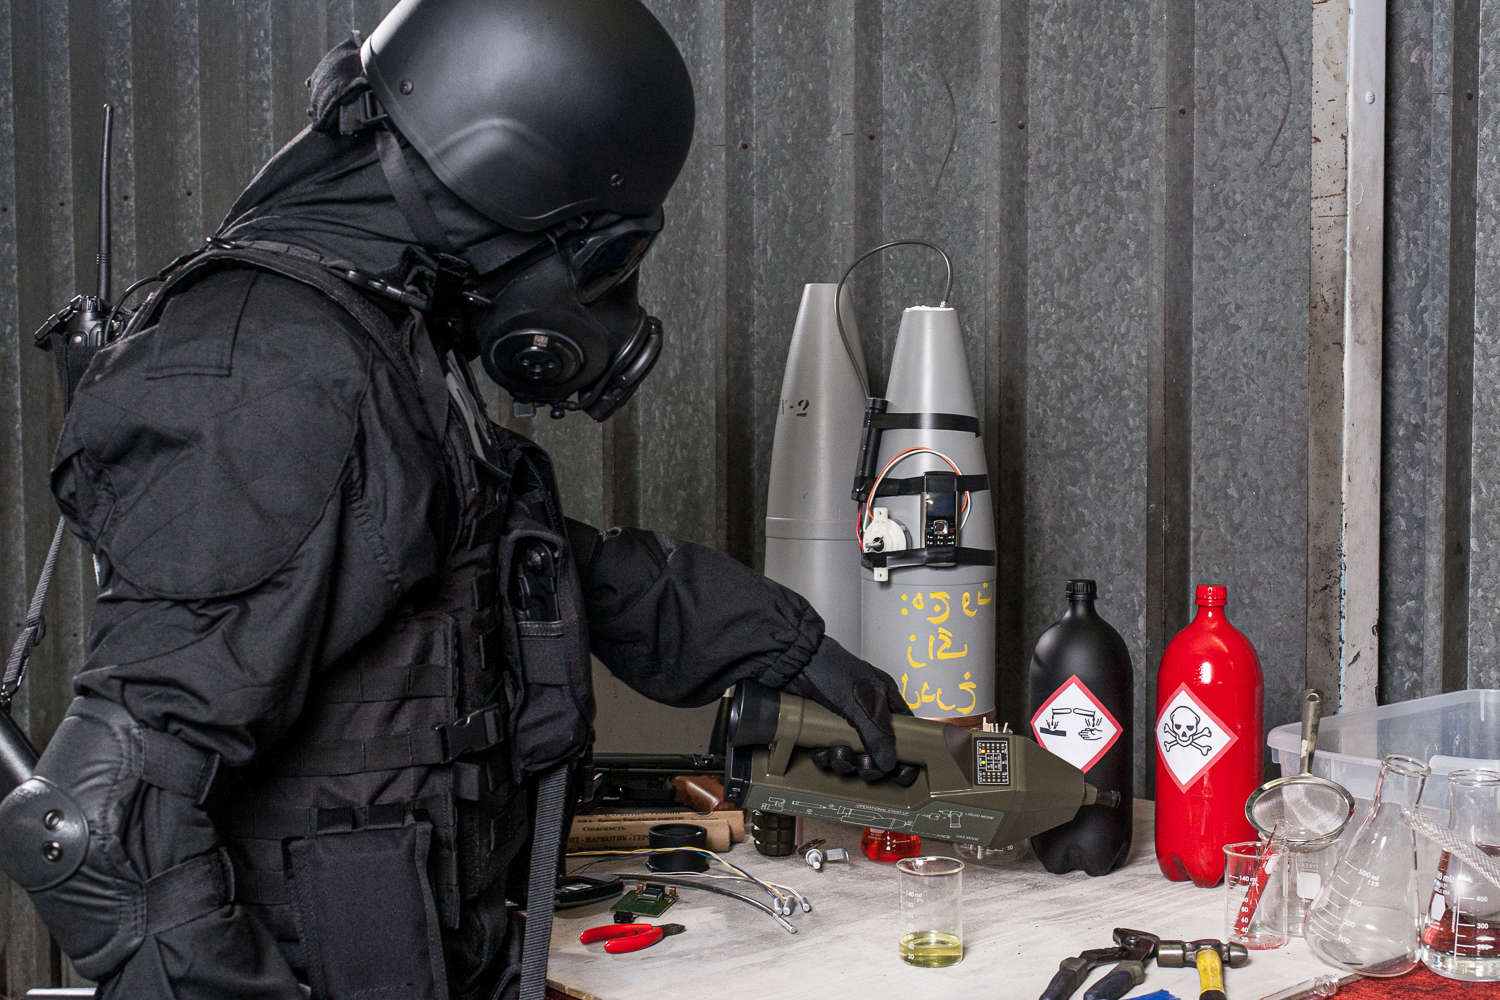 Avec le détecteur de la société proengin, un militaire teste des produits chimiques dans un laboratoire clandestin